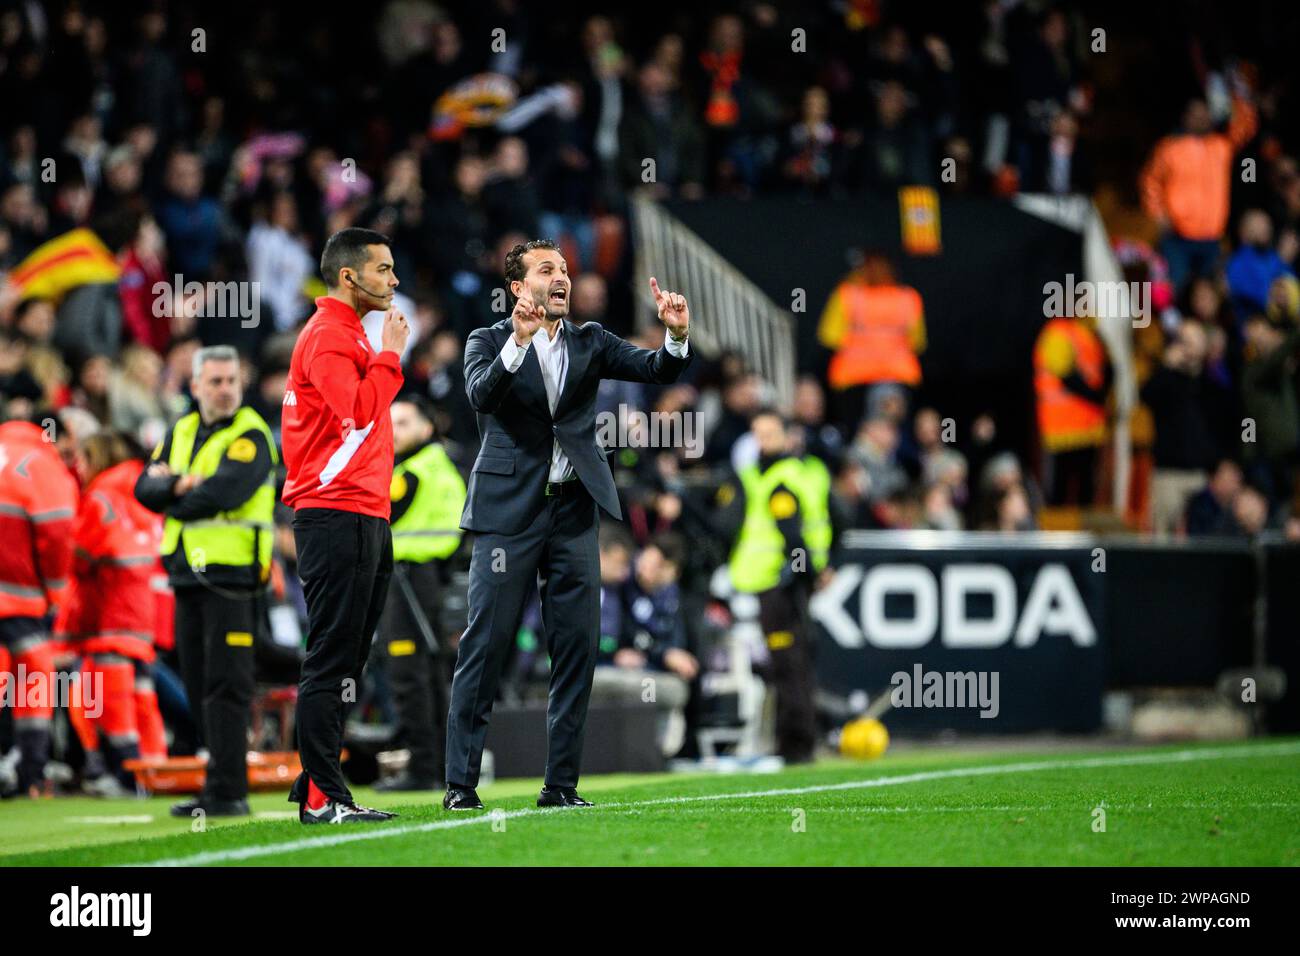 Valencia Club de Futbol coach Ruben Baraja giving instructions from the bench during a match at Mestalla, Valencia, Spain. Stock Photo